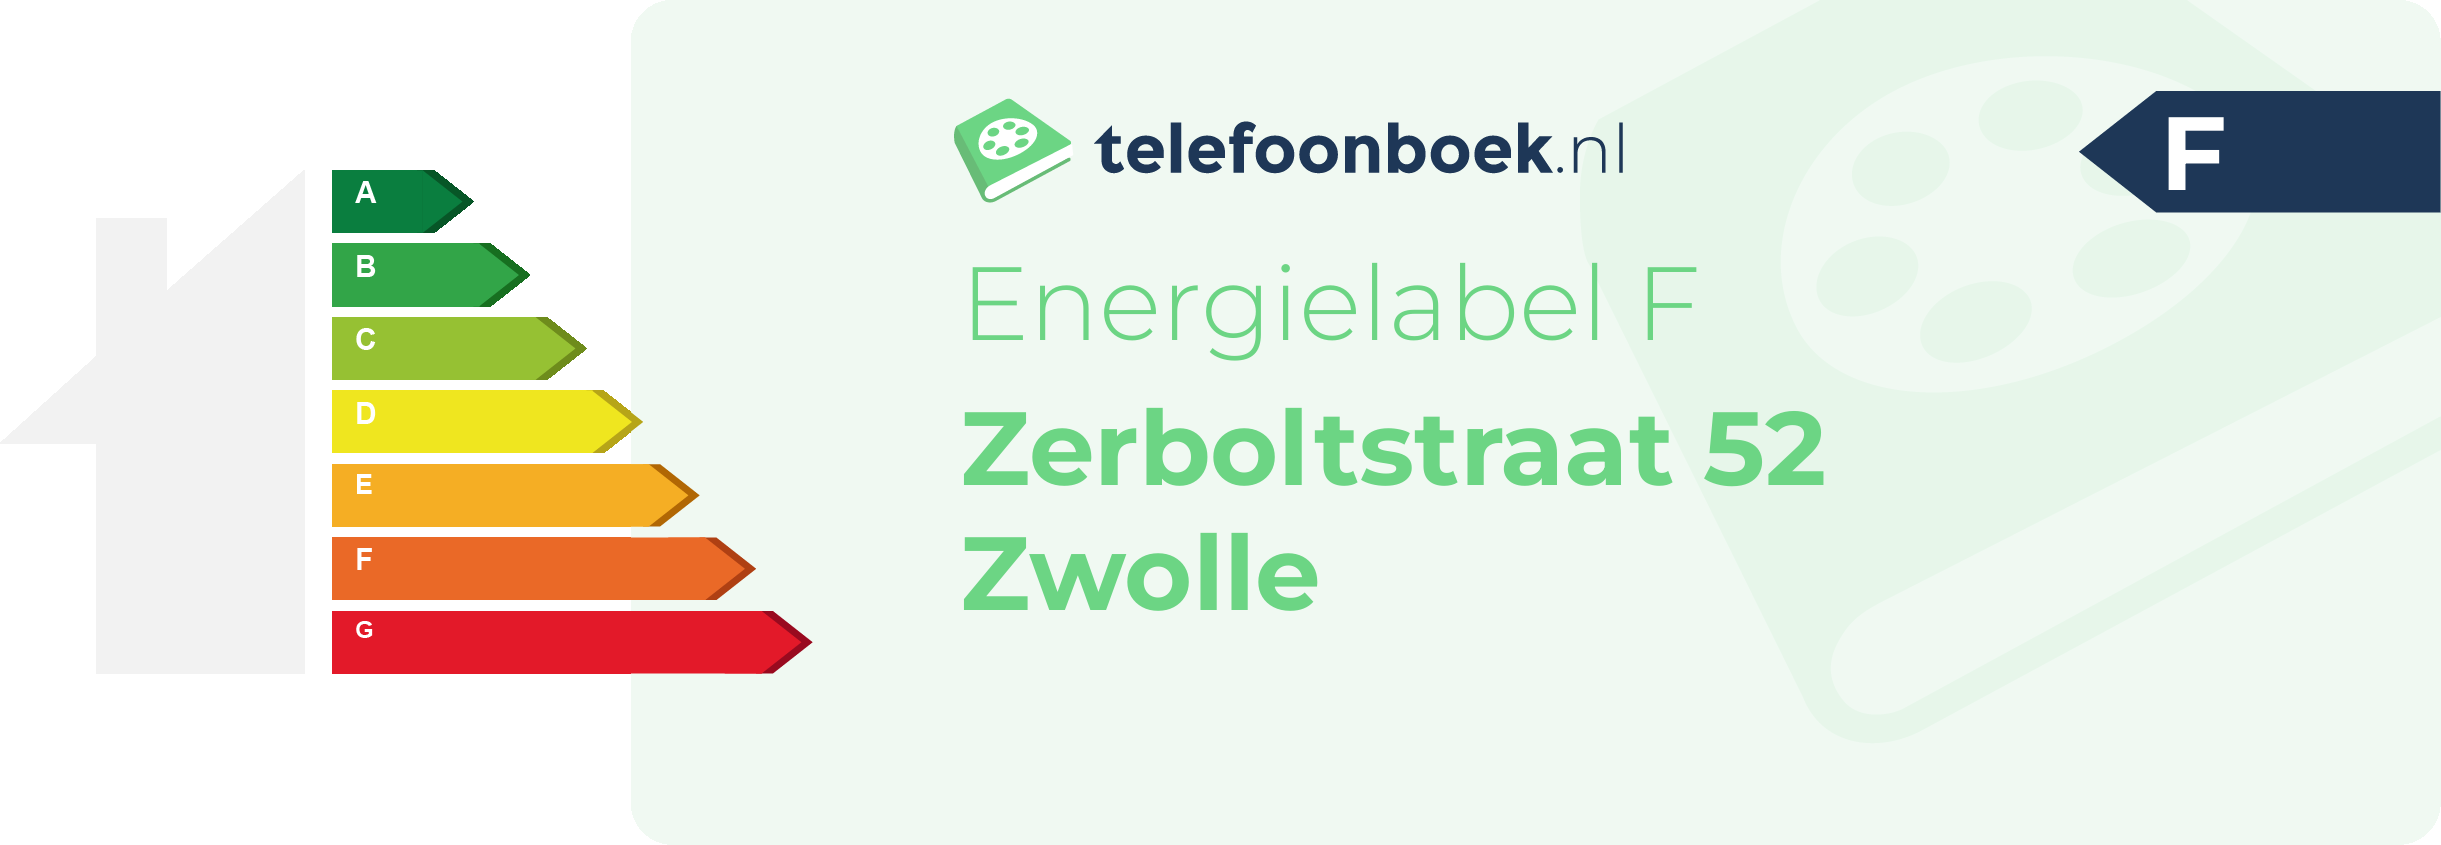 Energielabel Zerboltstraat 52 Zwolle